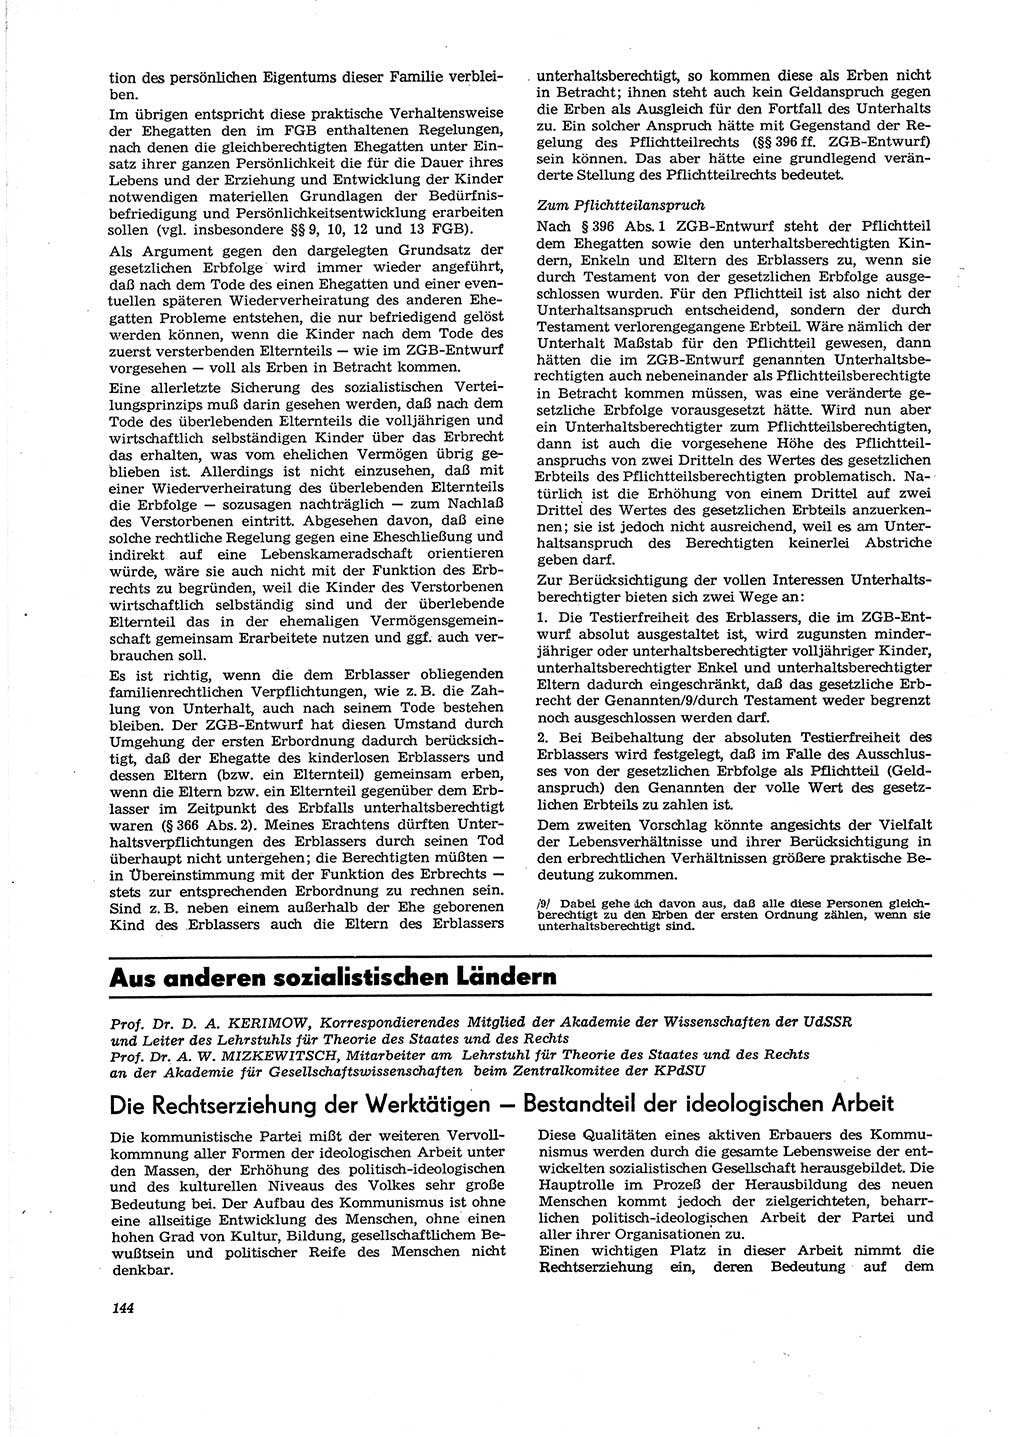 Neue Justiz (NJ), Zeitschrift für Recht und Rechtswissenschaft [Deutsche Demokratische Republik (DDR)], 29. Jahrgang 1975, Seite 144 (NJ DDR 1975, S. 144)